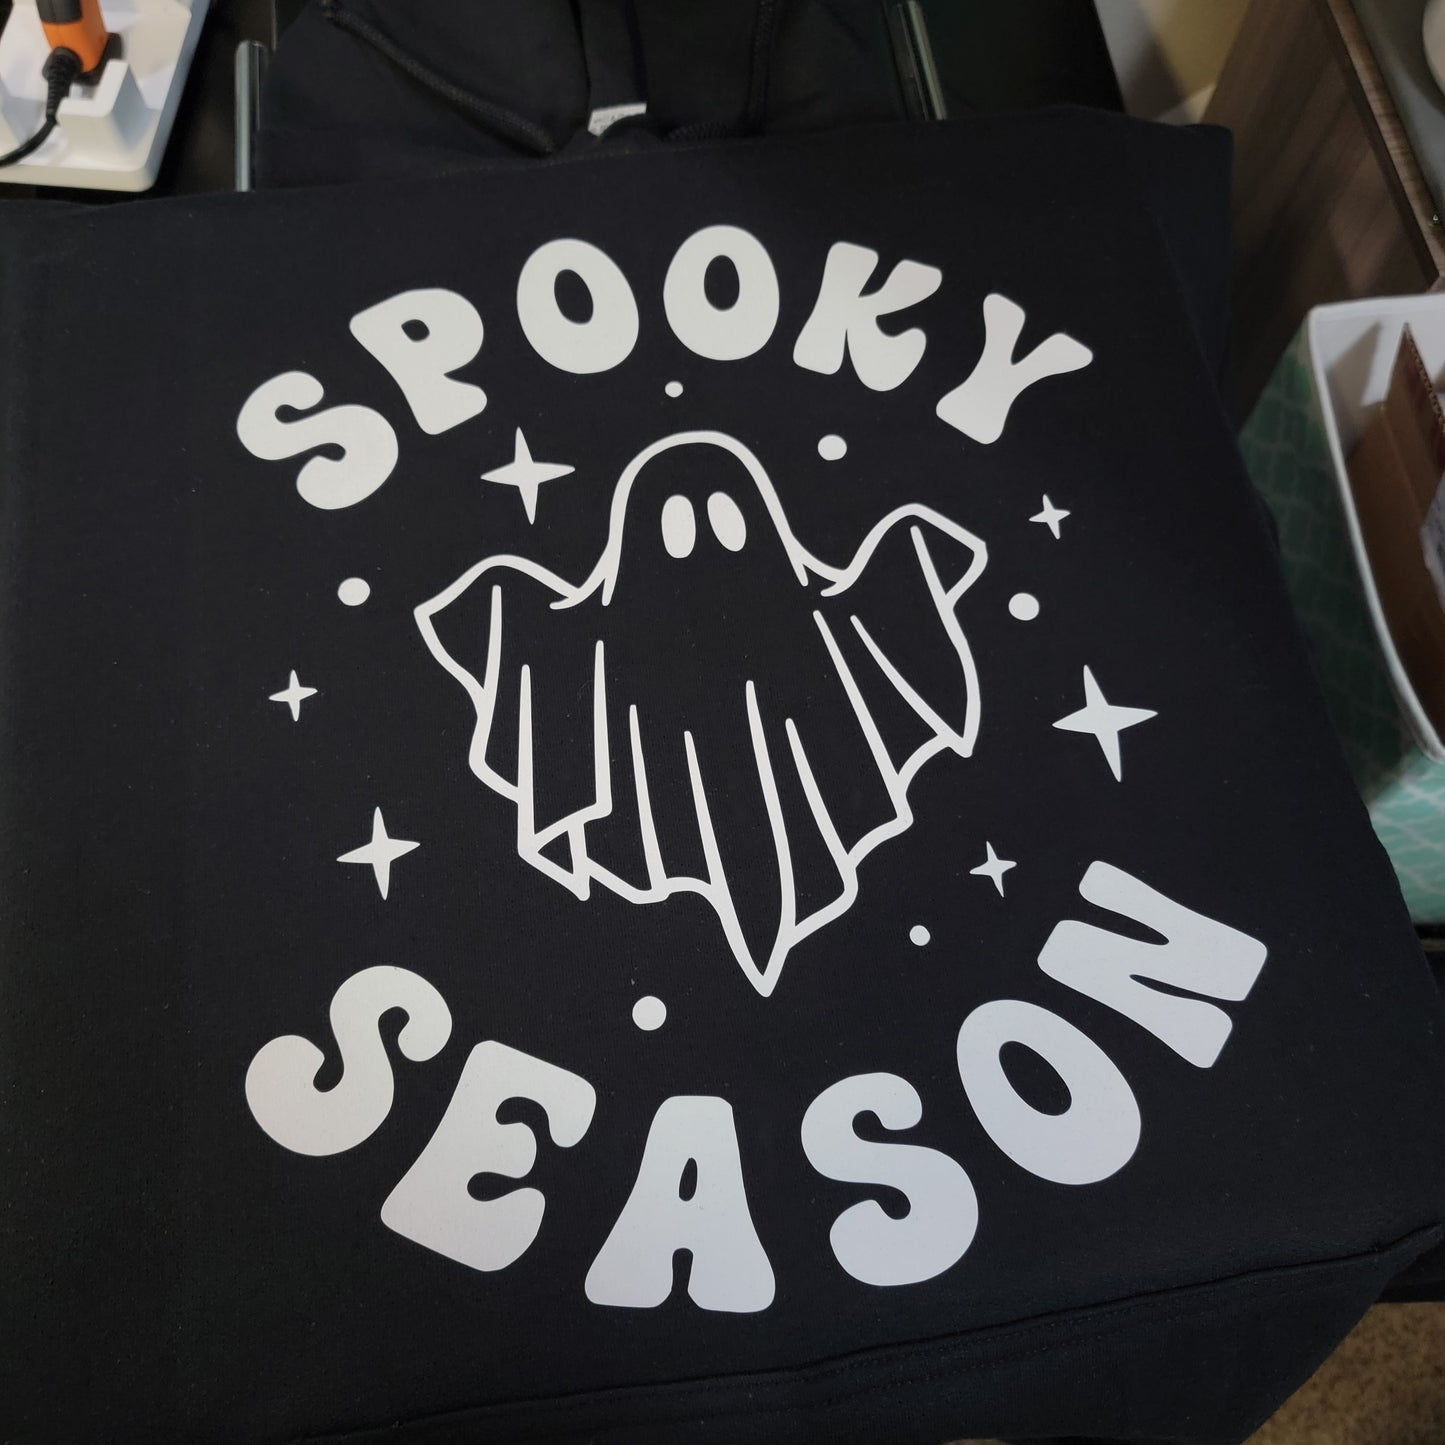 Spooky season ghost  Unisex T-shirt